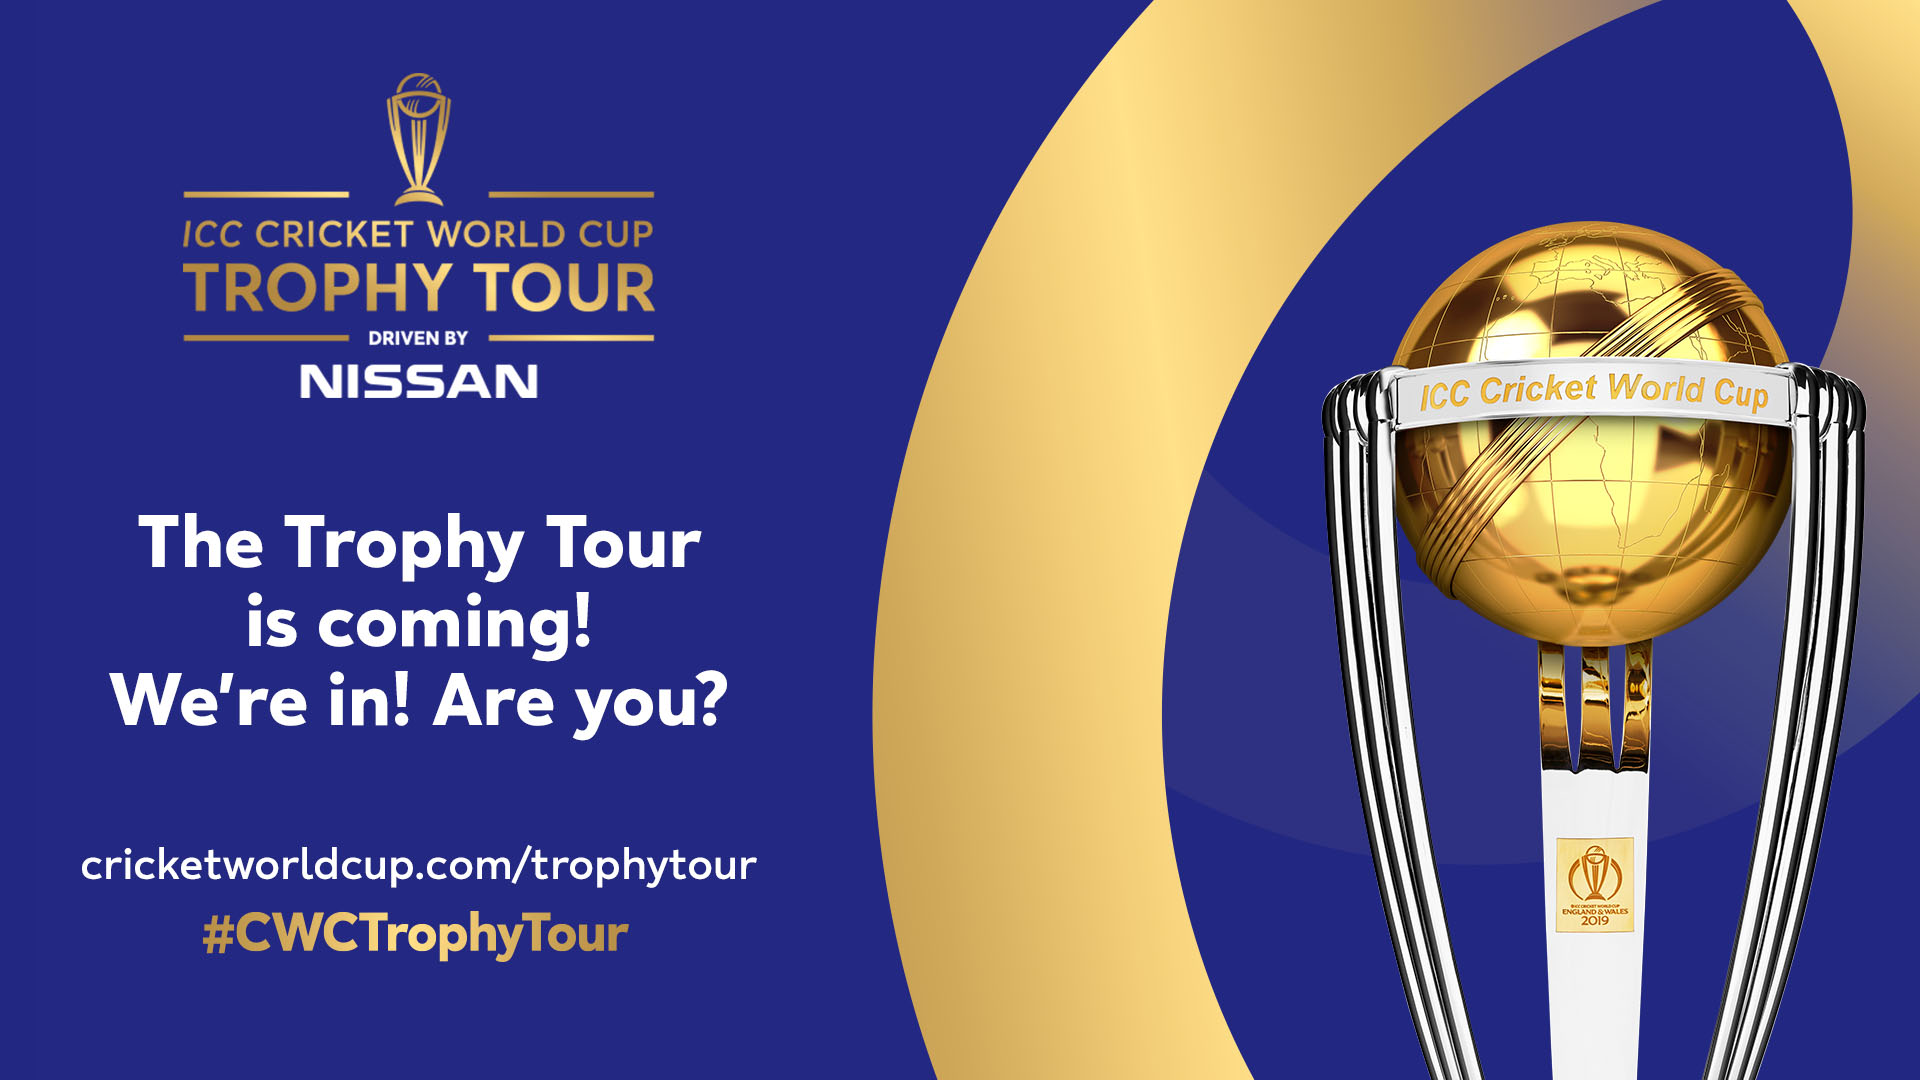 2019-01/1548429033_trophy-tour-twitter-post-short